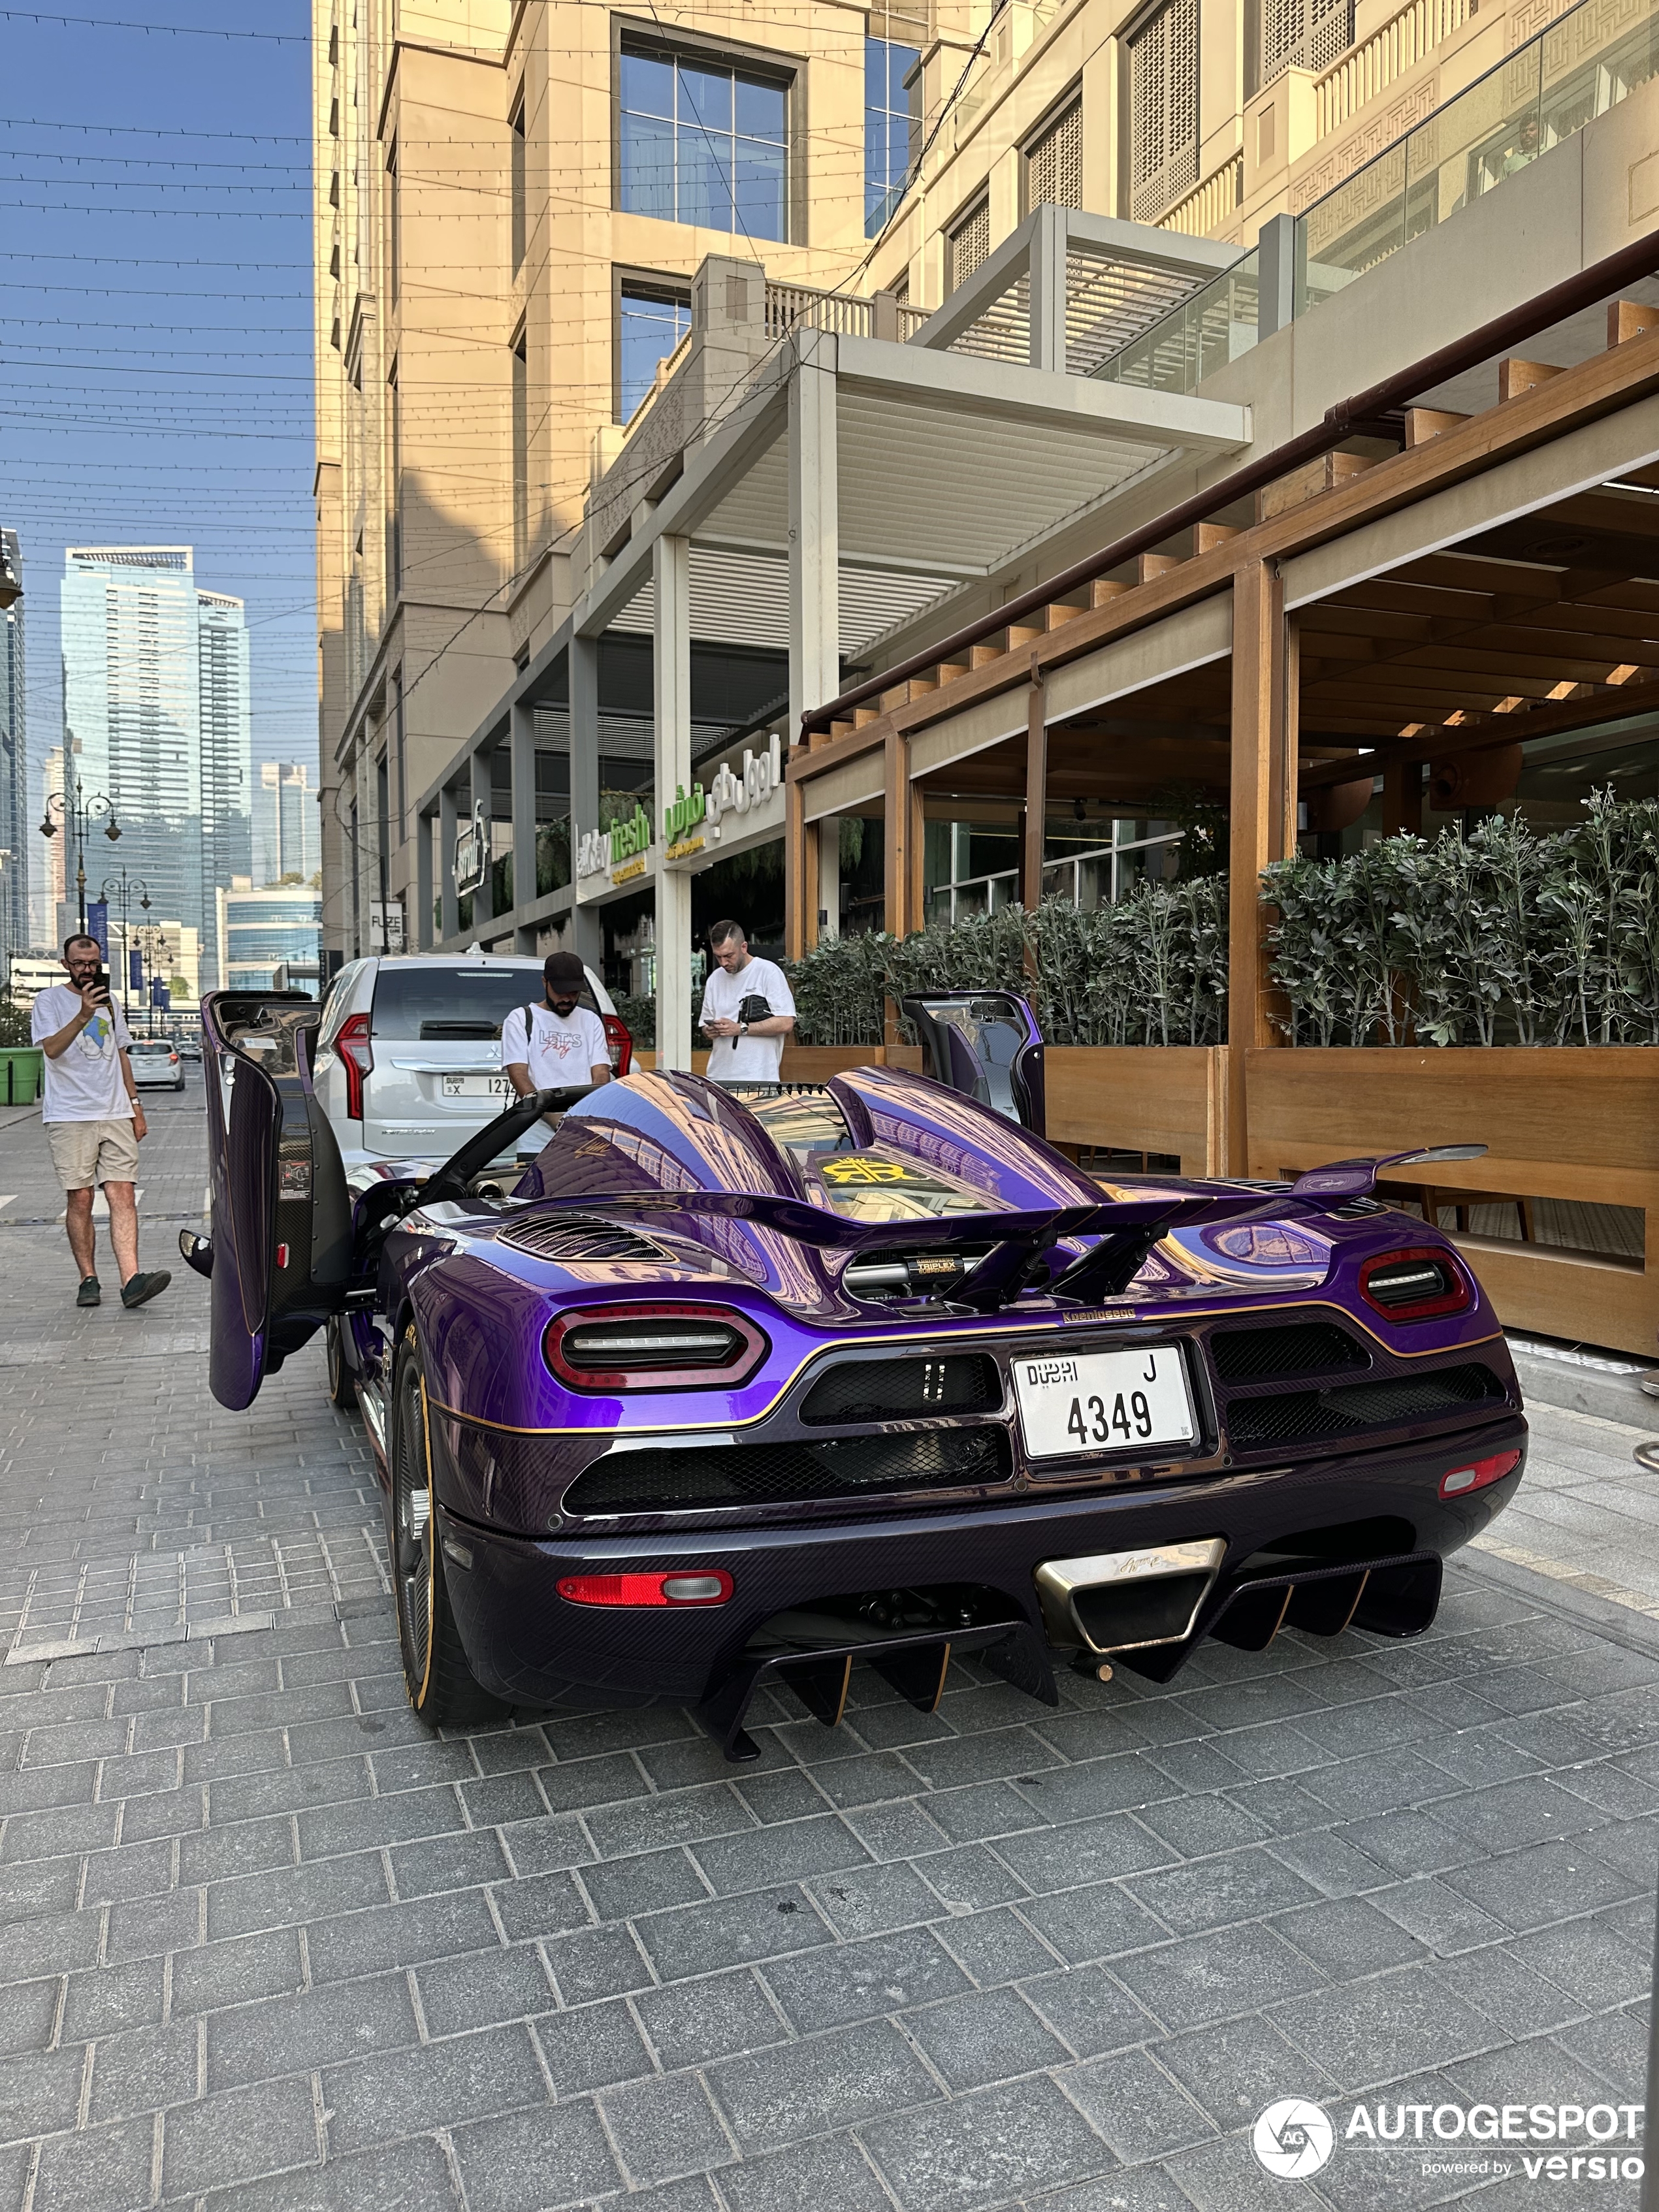 Ein weiteres violettes Supersportwagen taucht auf, diesmal in Dubai.